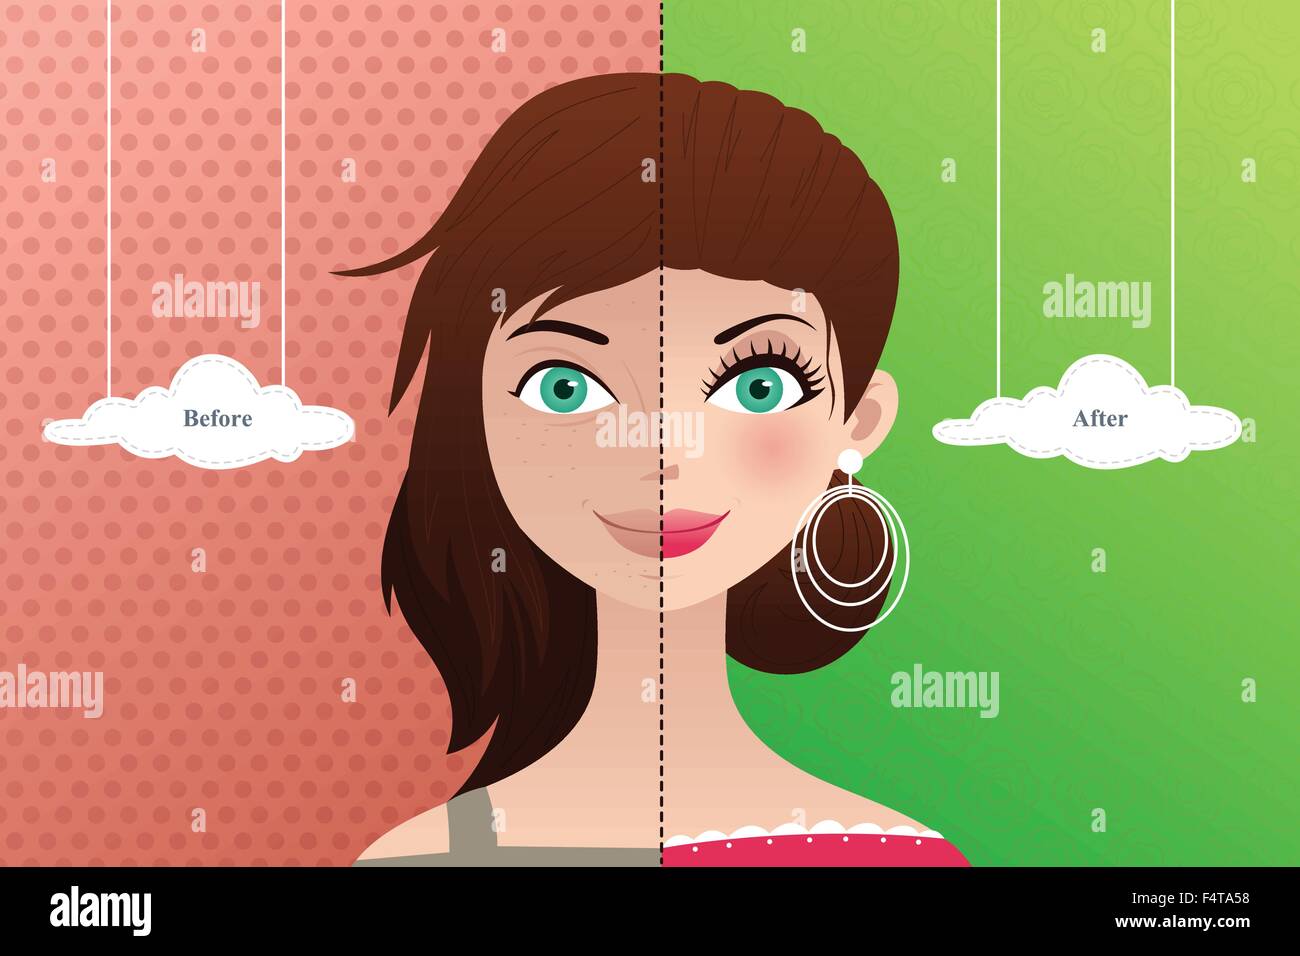 Un vecteur illustration d'une belle femme avant et après le maquillage Illustration de Vecteur